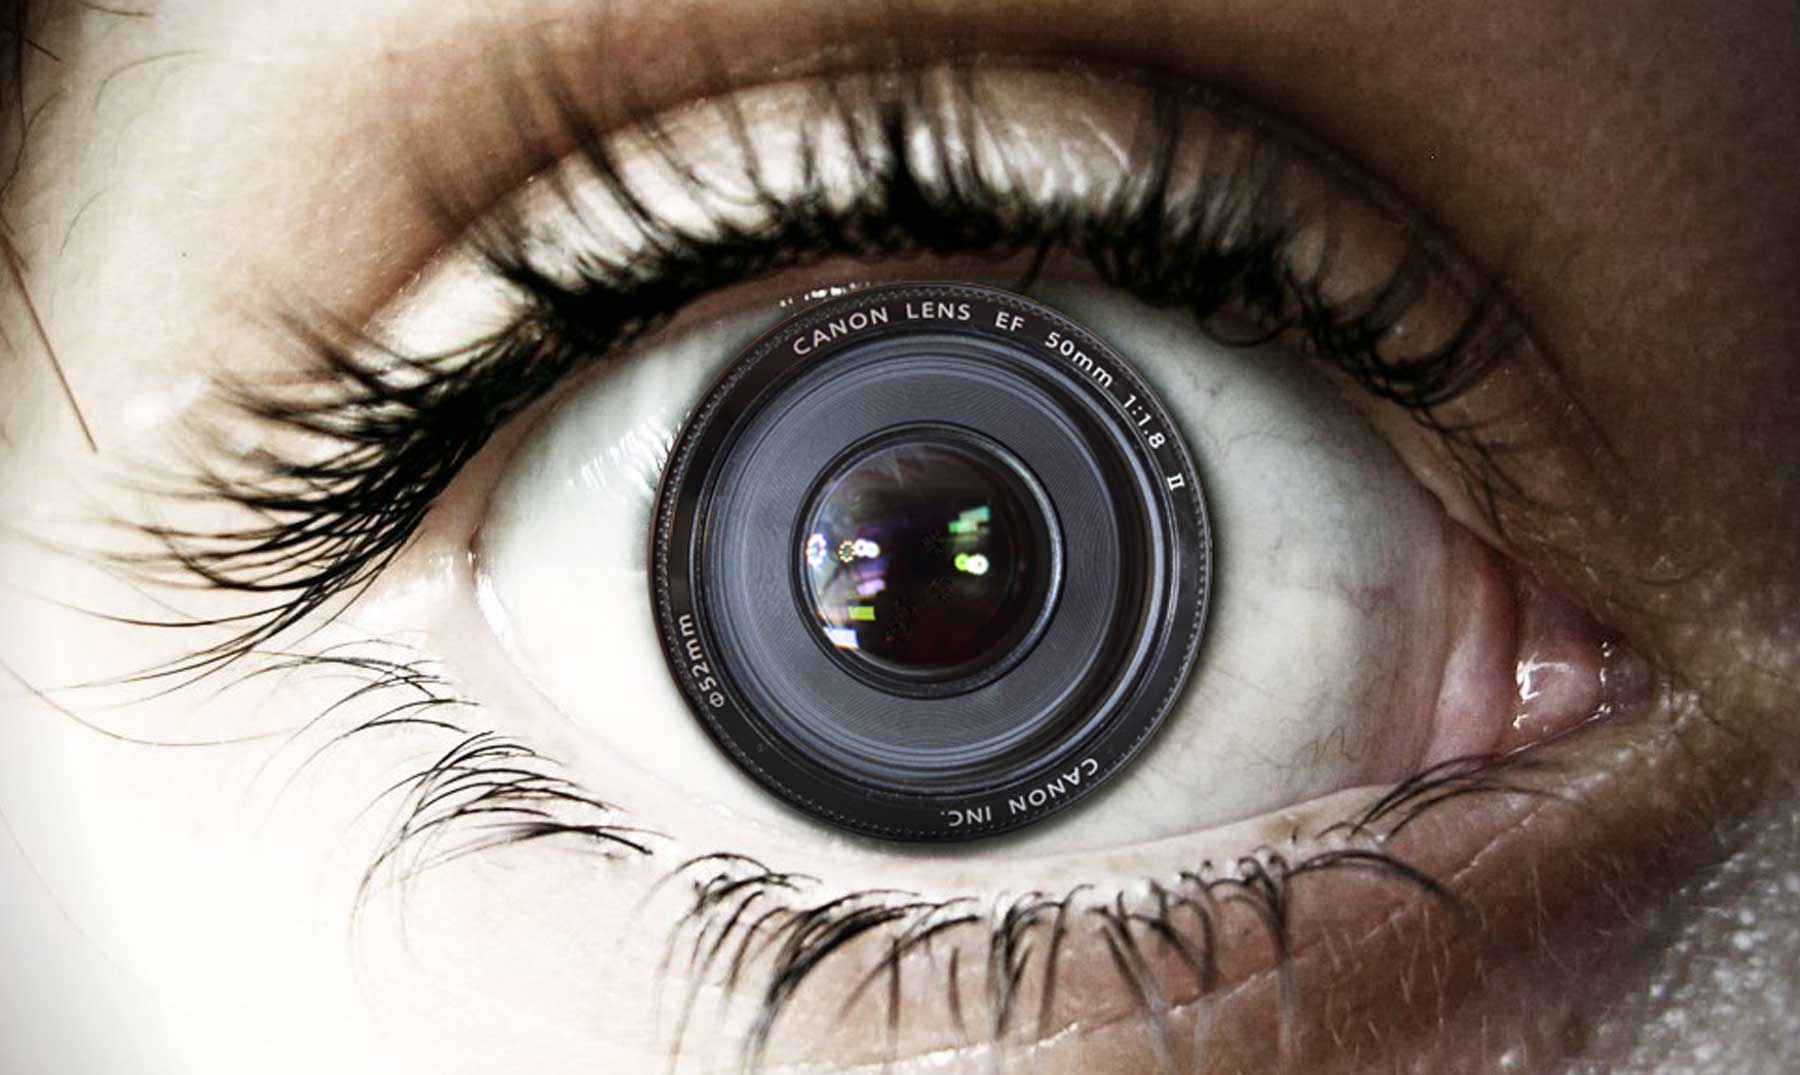 Comparação do olho humano a uma câmera digital.